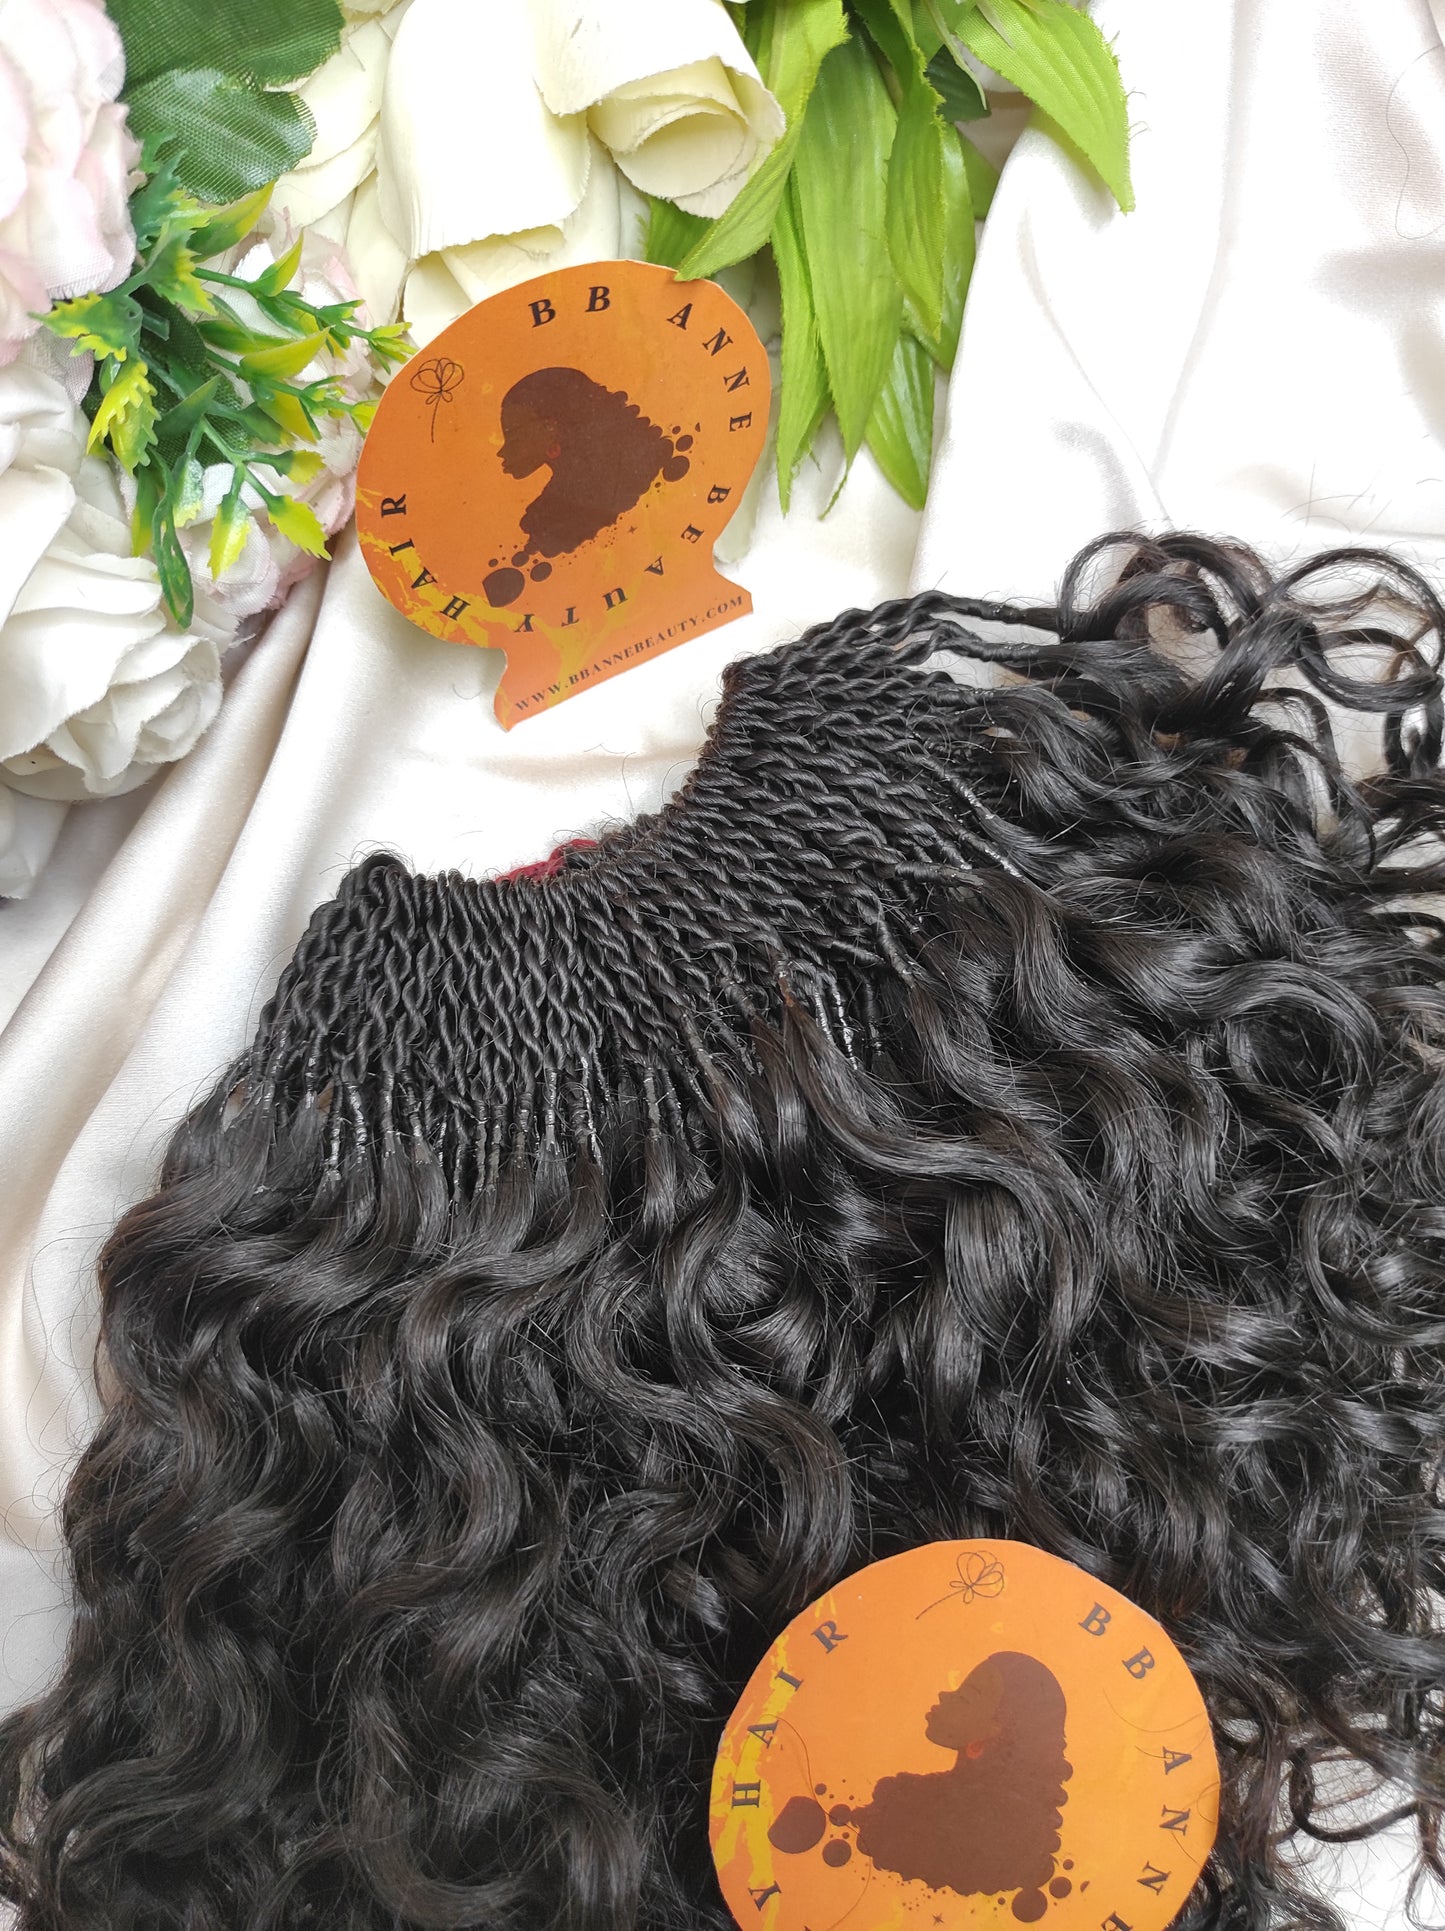 AMARA 100% Human Hair Crochet Braids || PIXIE Curl